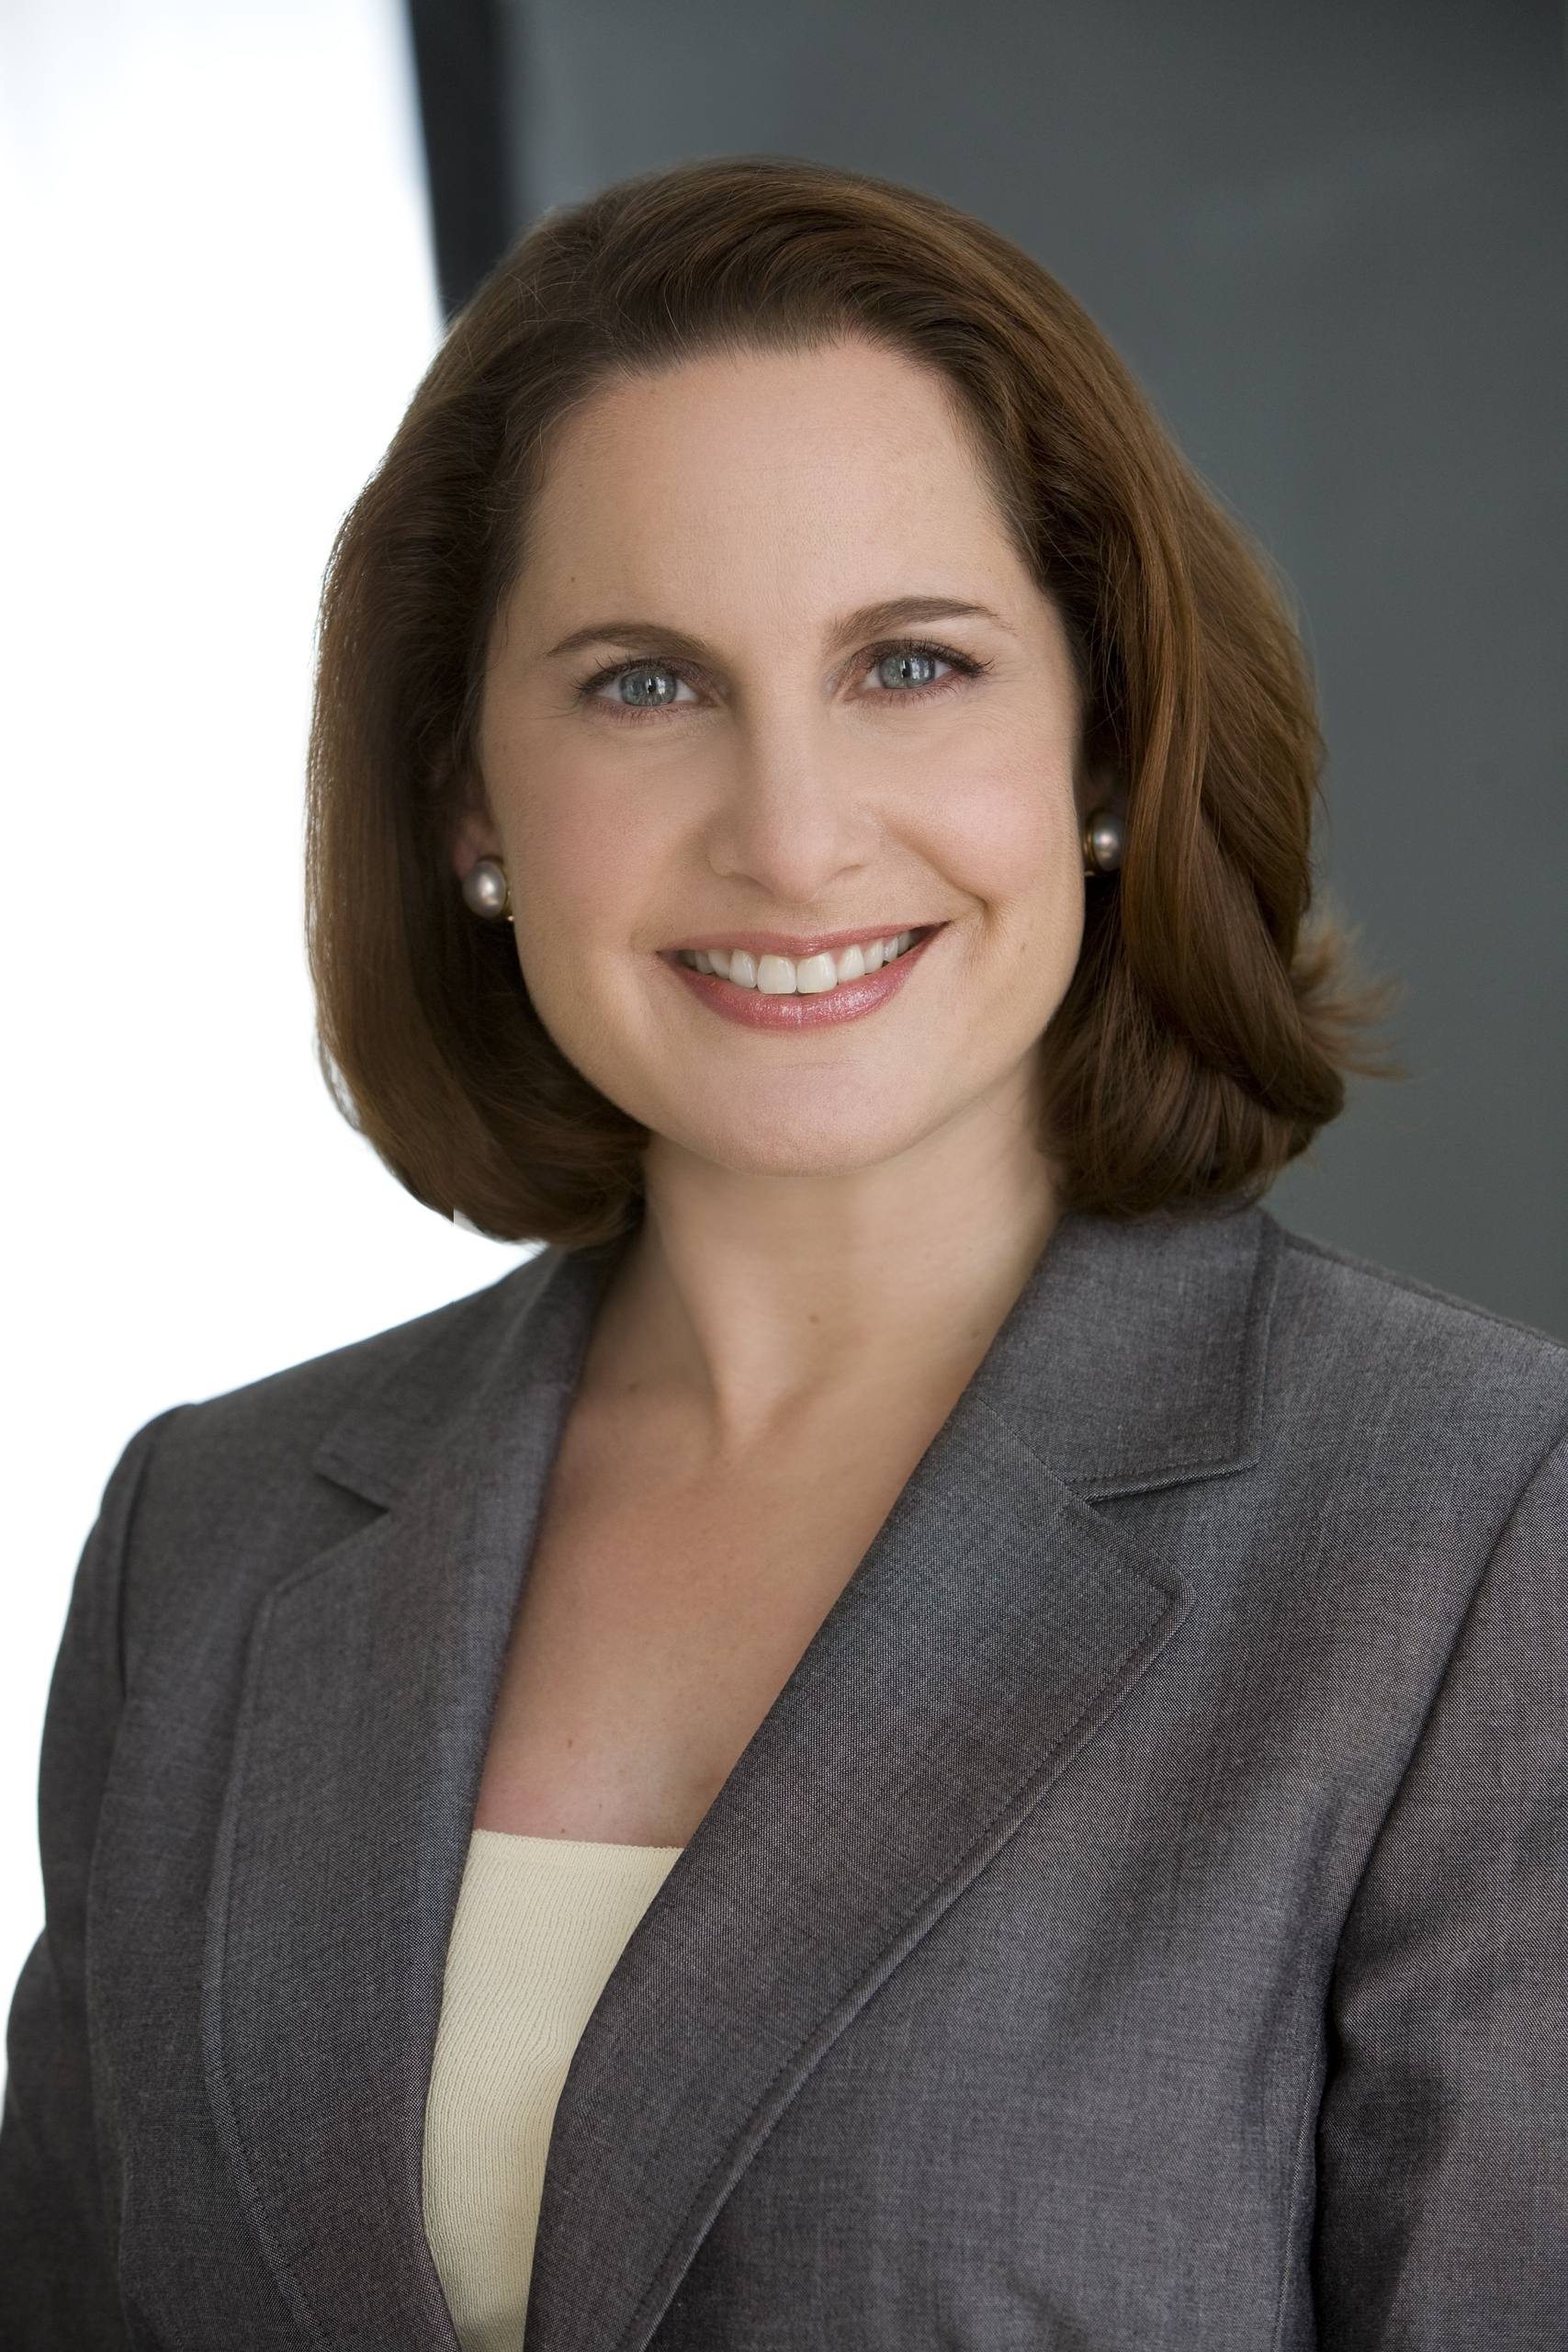 Small Business Attorney Nina Kaufman Wins Prestigious Award for Women